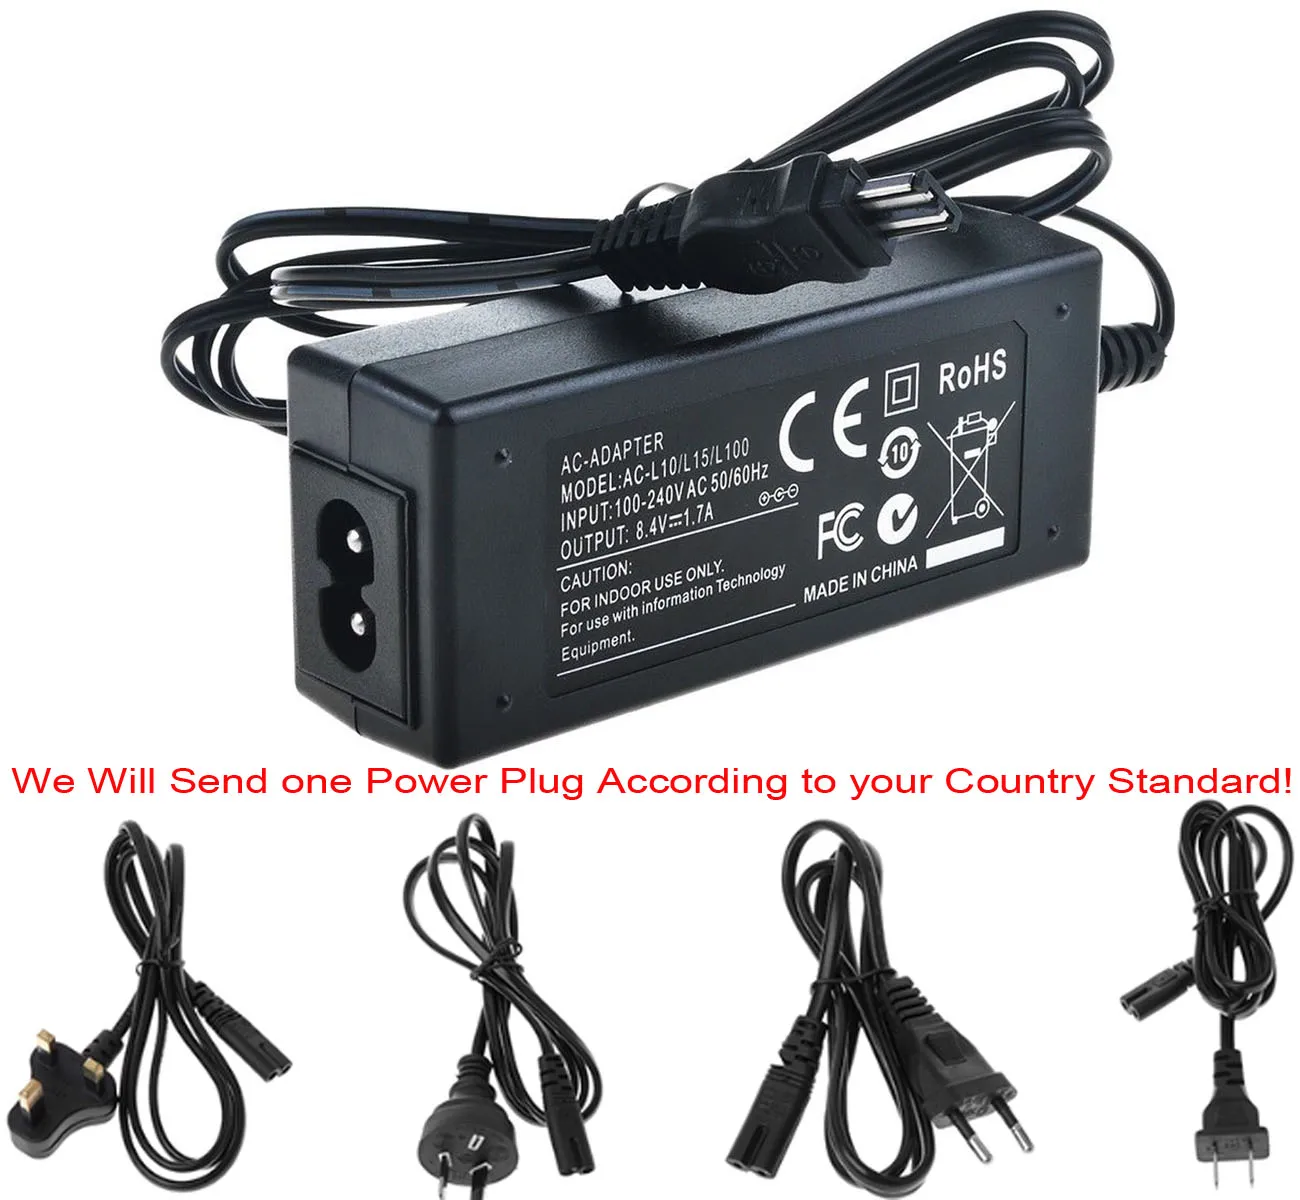 

Зарядное устройство с адаптером питания переменного тока для Sony DCR-TRV210, TRV230, TRV240, TRV250, TRV260, TRV270, TRV280, TRV380, TRV480 Handycam Camcorder